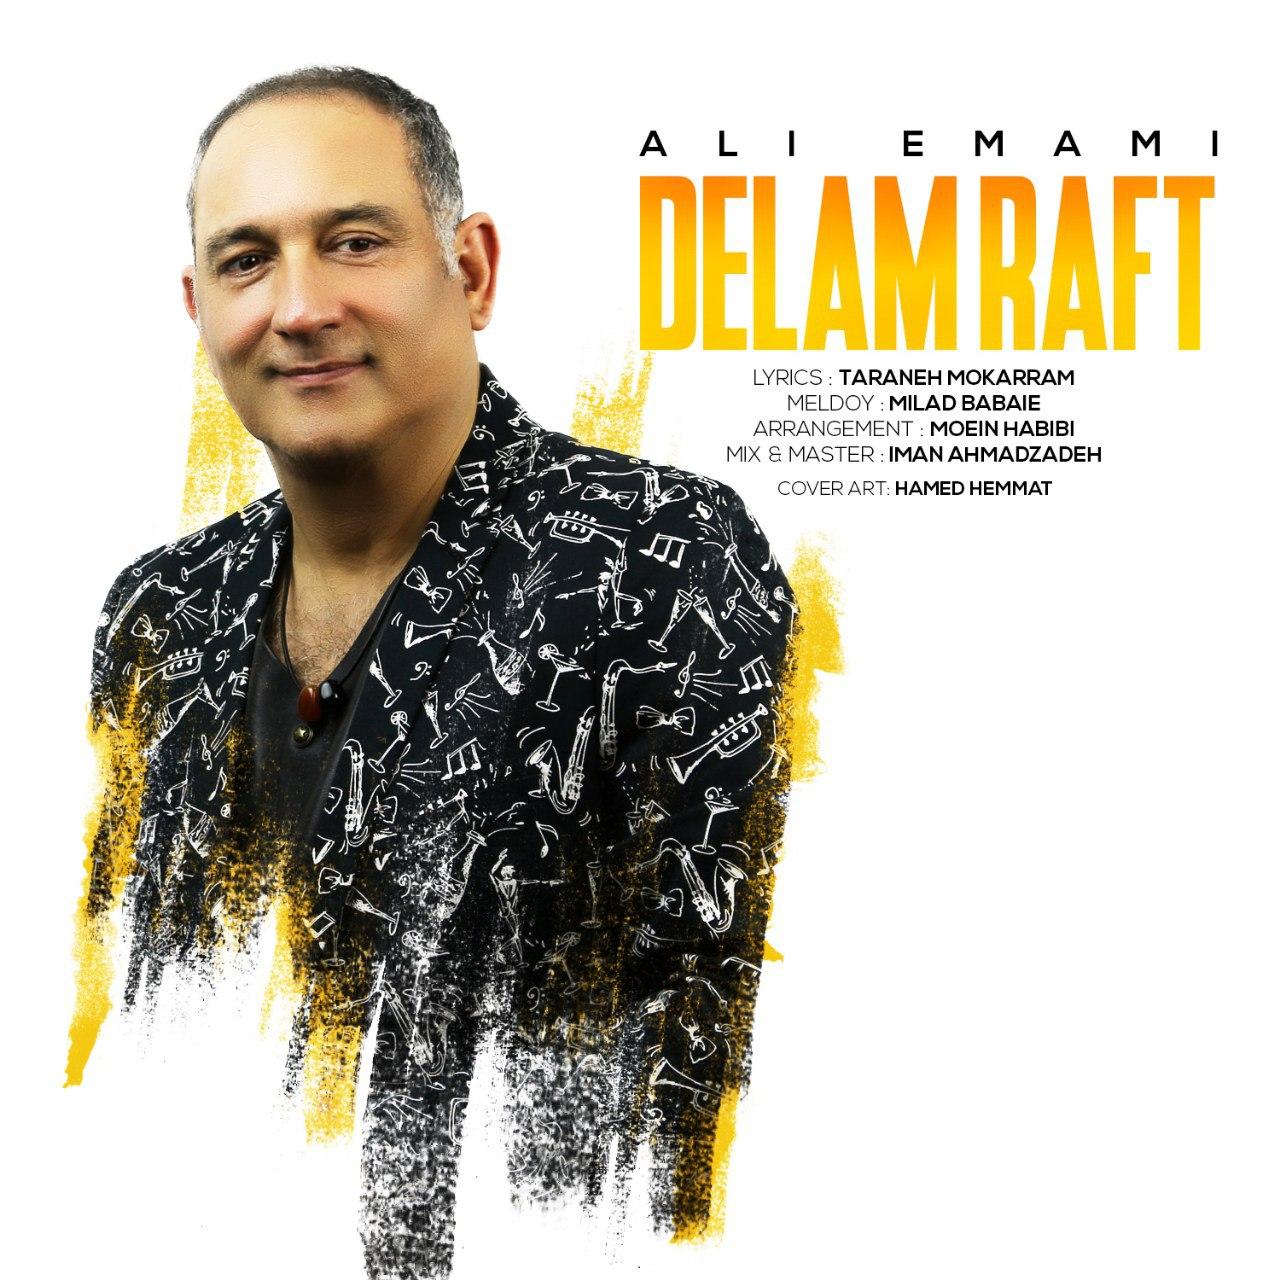 Ali Emami – Delam Raft